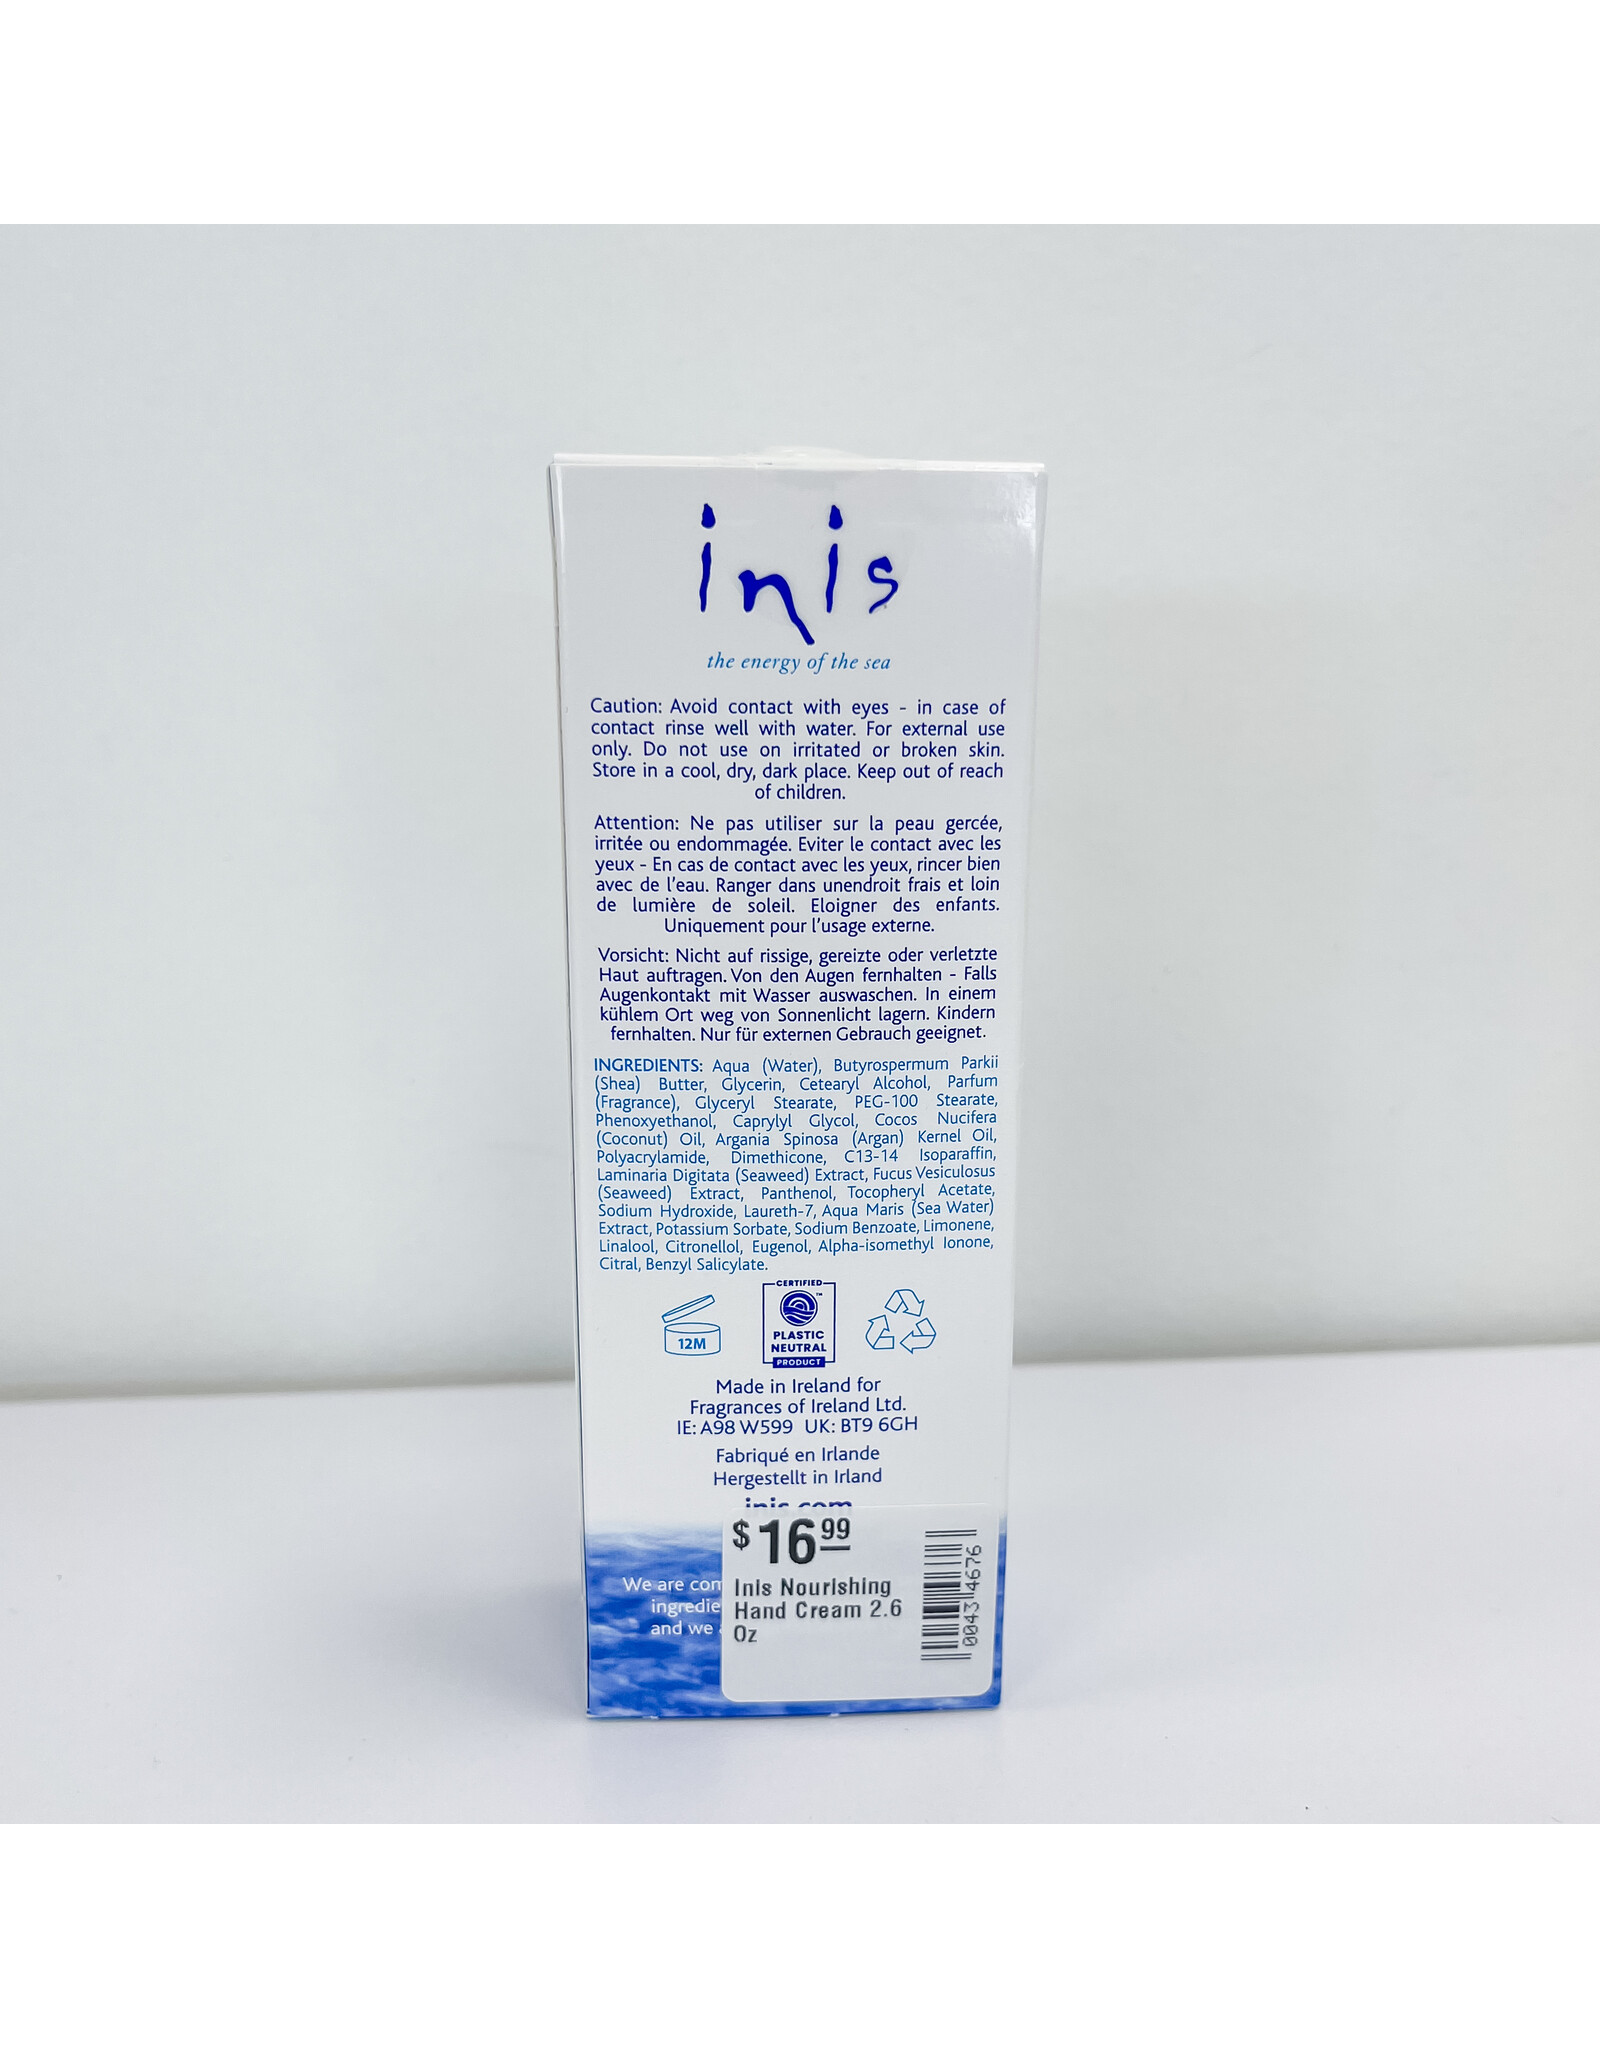 Inis Nourishing Hand Cream 2.6 Oz